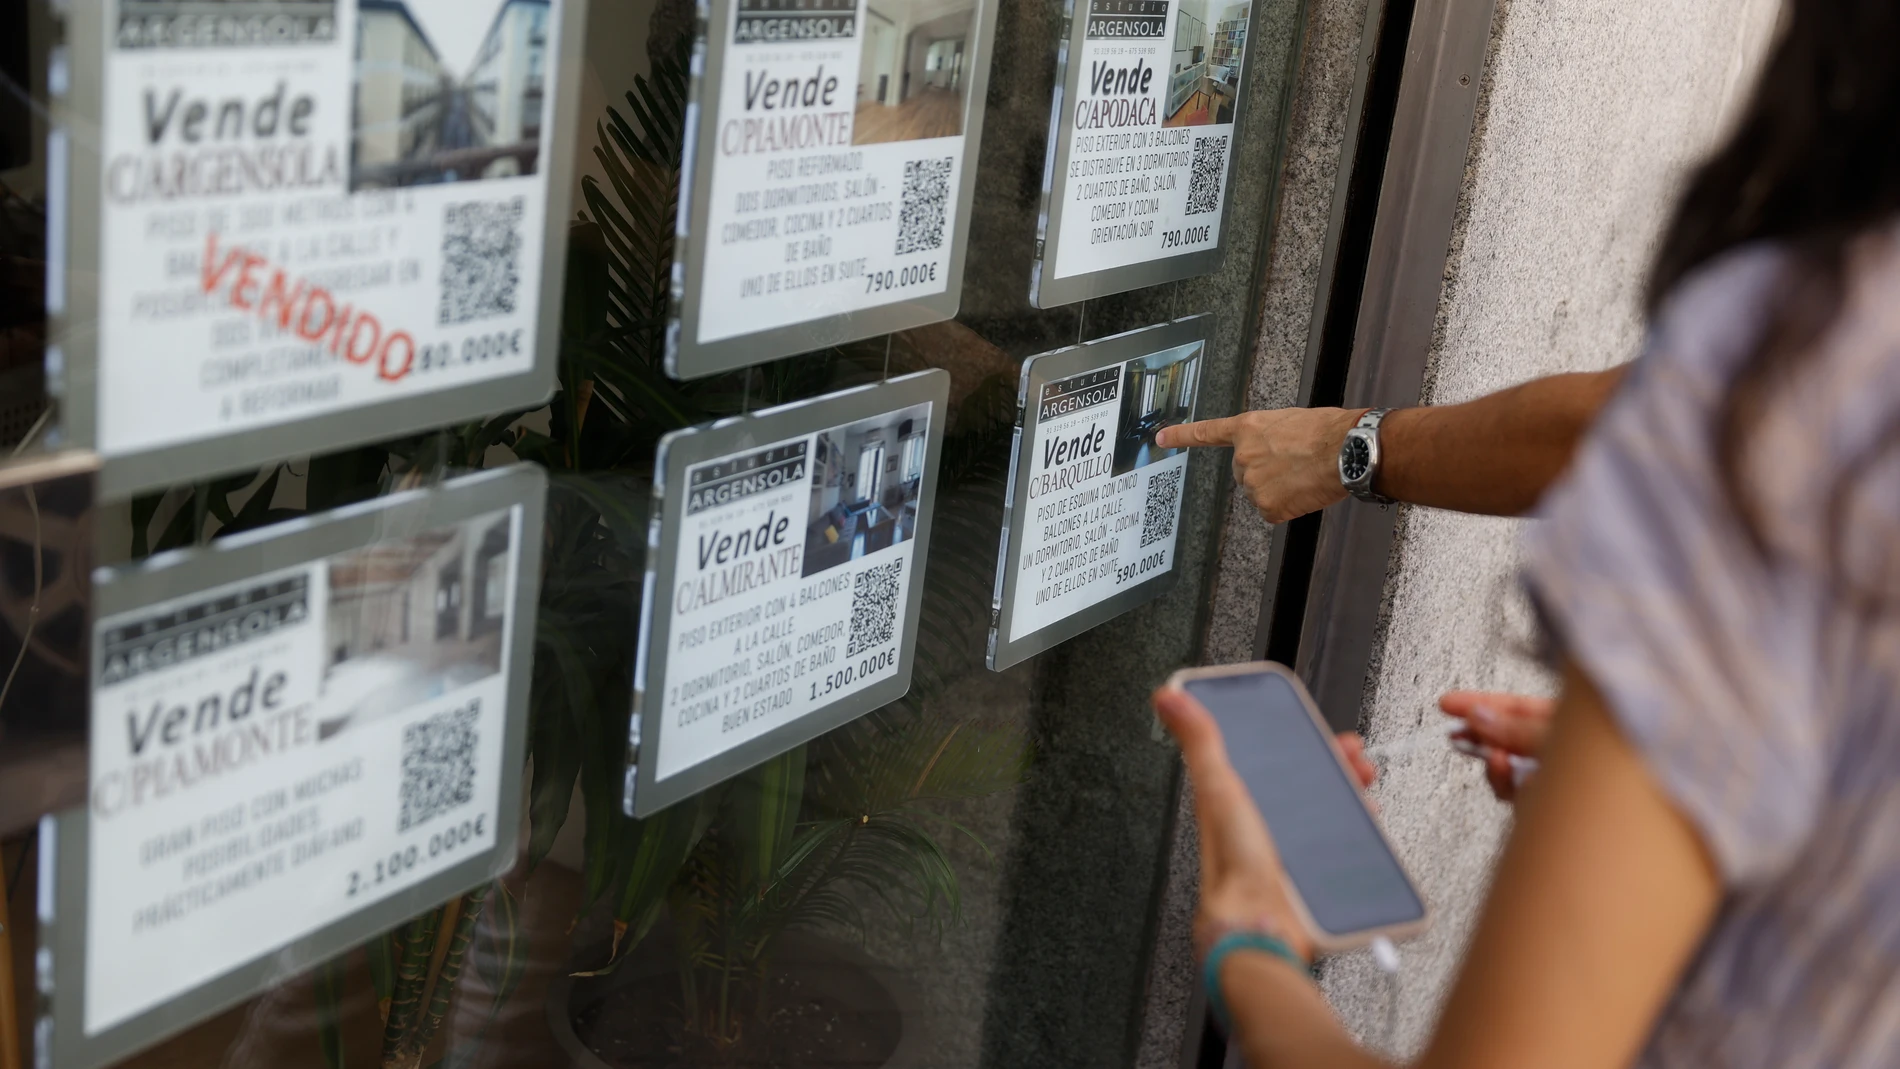 Unas personas se paran delante del escaparate de una inmobiliaria que publicita los inmuebles que gestiona, en el centro de Madrid